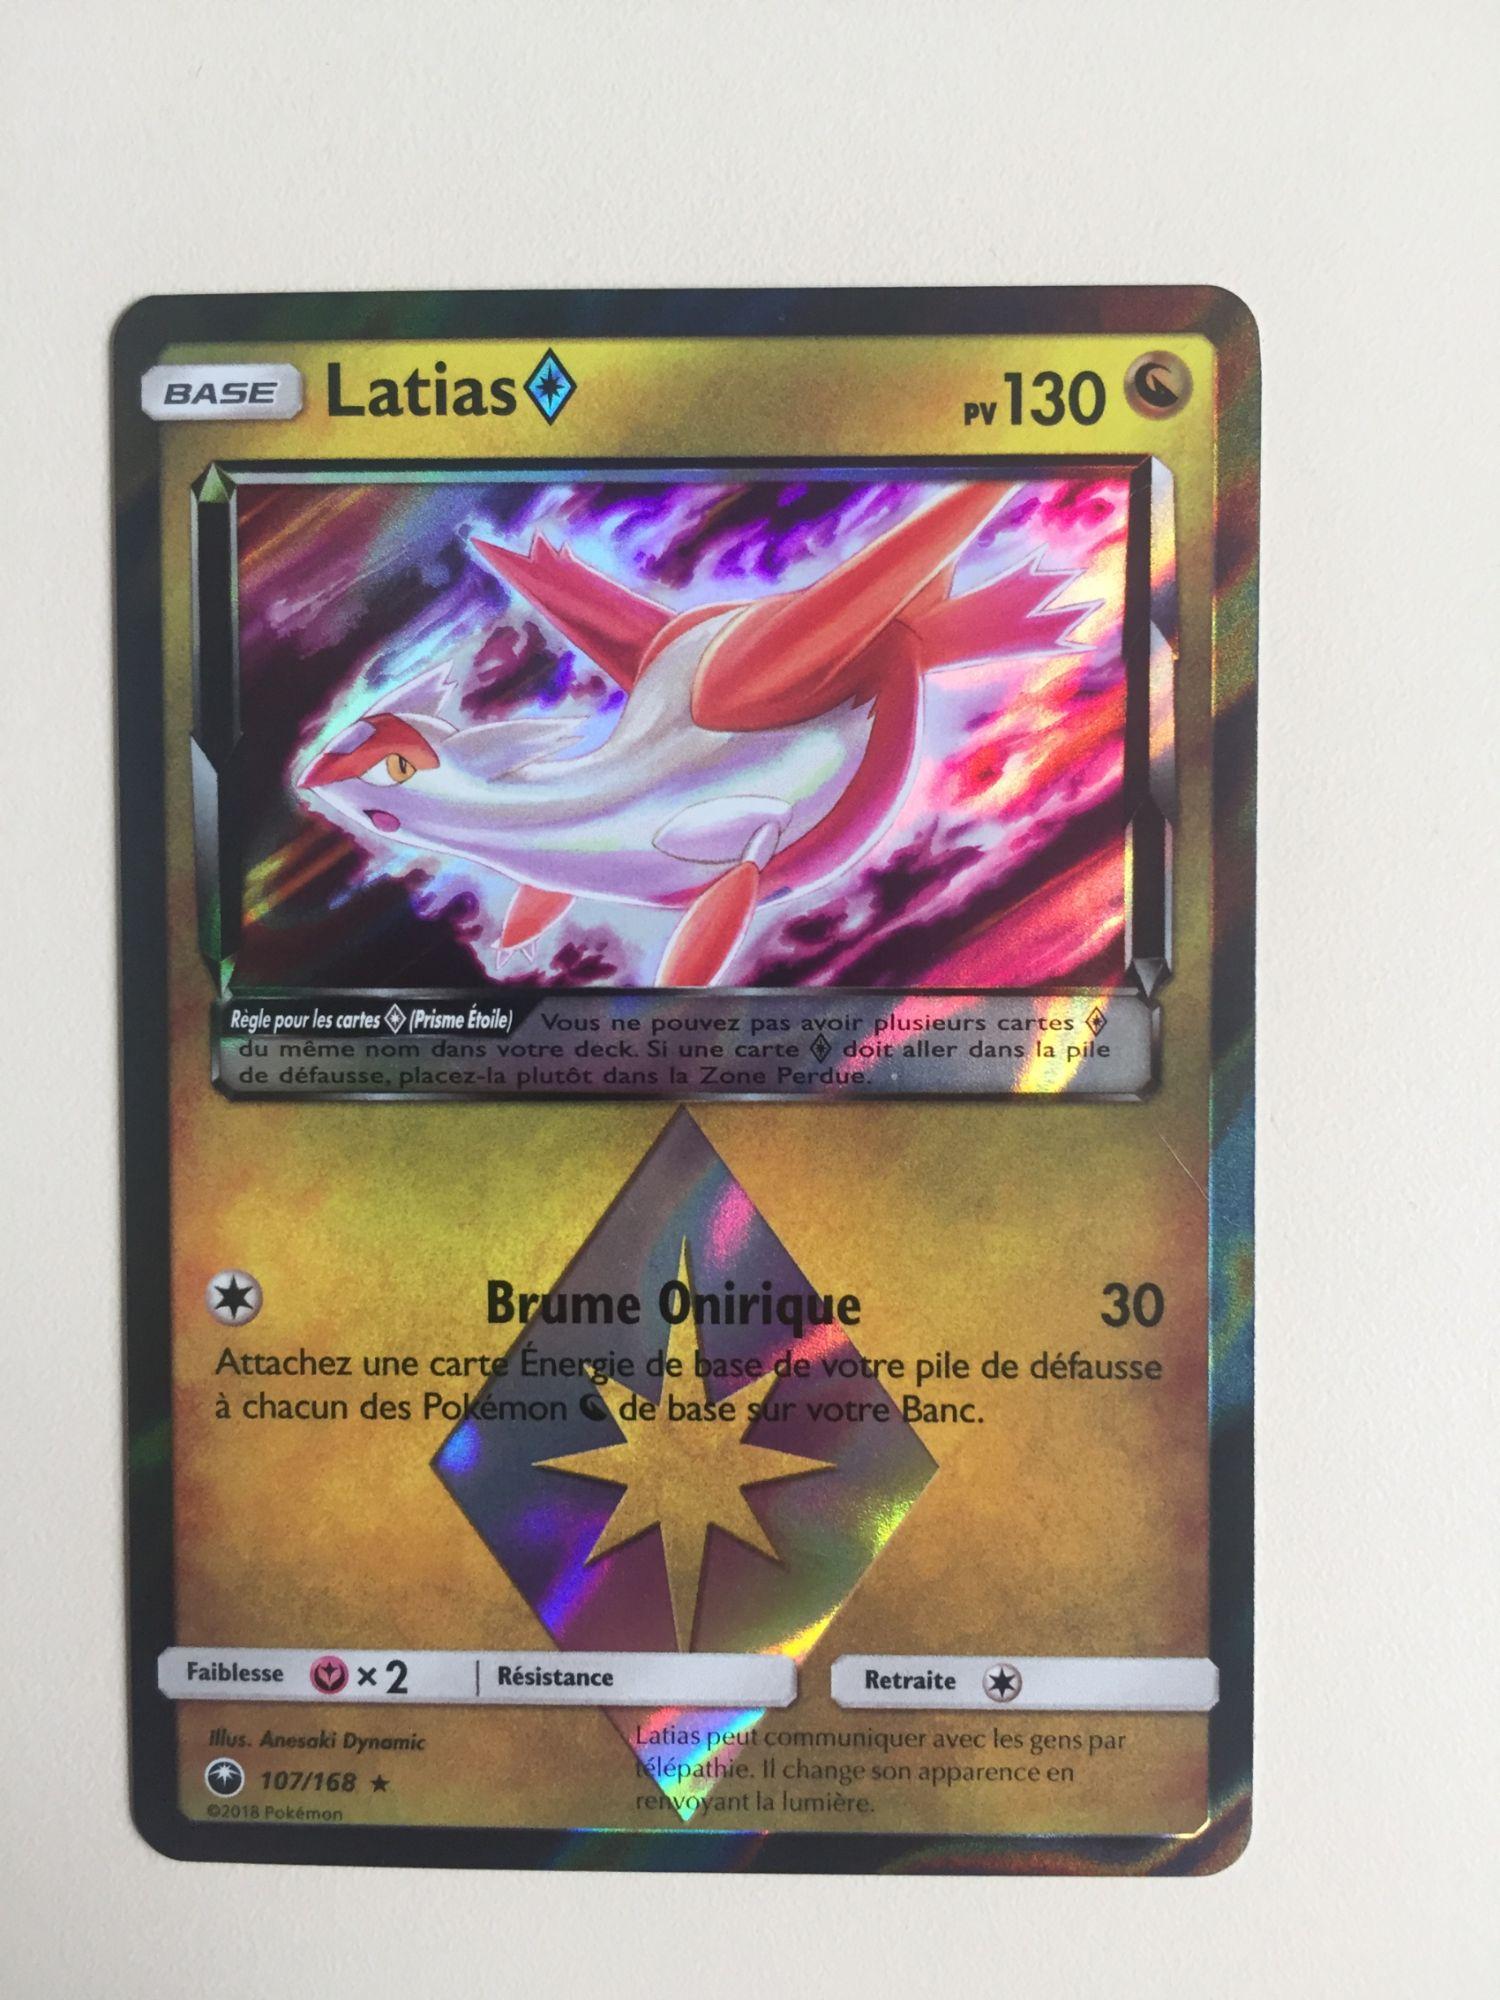 Kit Carta Pokémon Lendários Latios Prisma E Latias Prisma